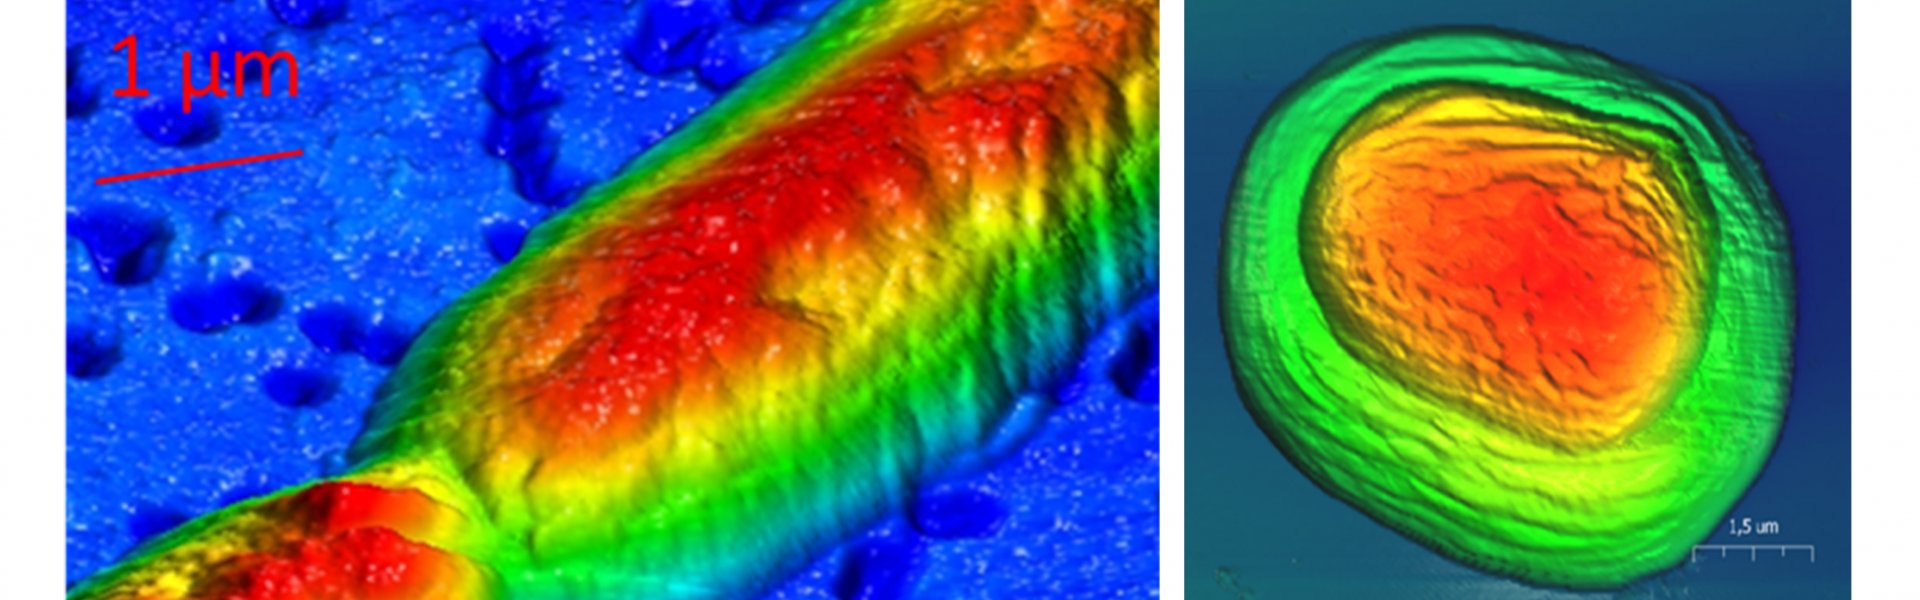 Crenothrix Filament, Lake Zug 2014 (links) und AFM-Bild einer Chromatium Okenii Zelle aus dem Lago di Cadagno, Schweiz, Crytical Point dryer behandelt (©Max-Planck-Institut für Marine Mikrobiologie, D. Tienken)